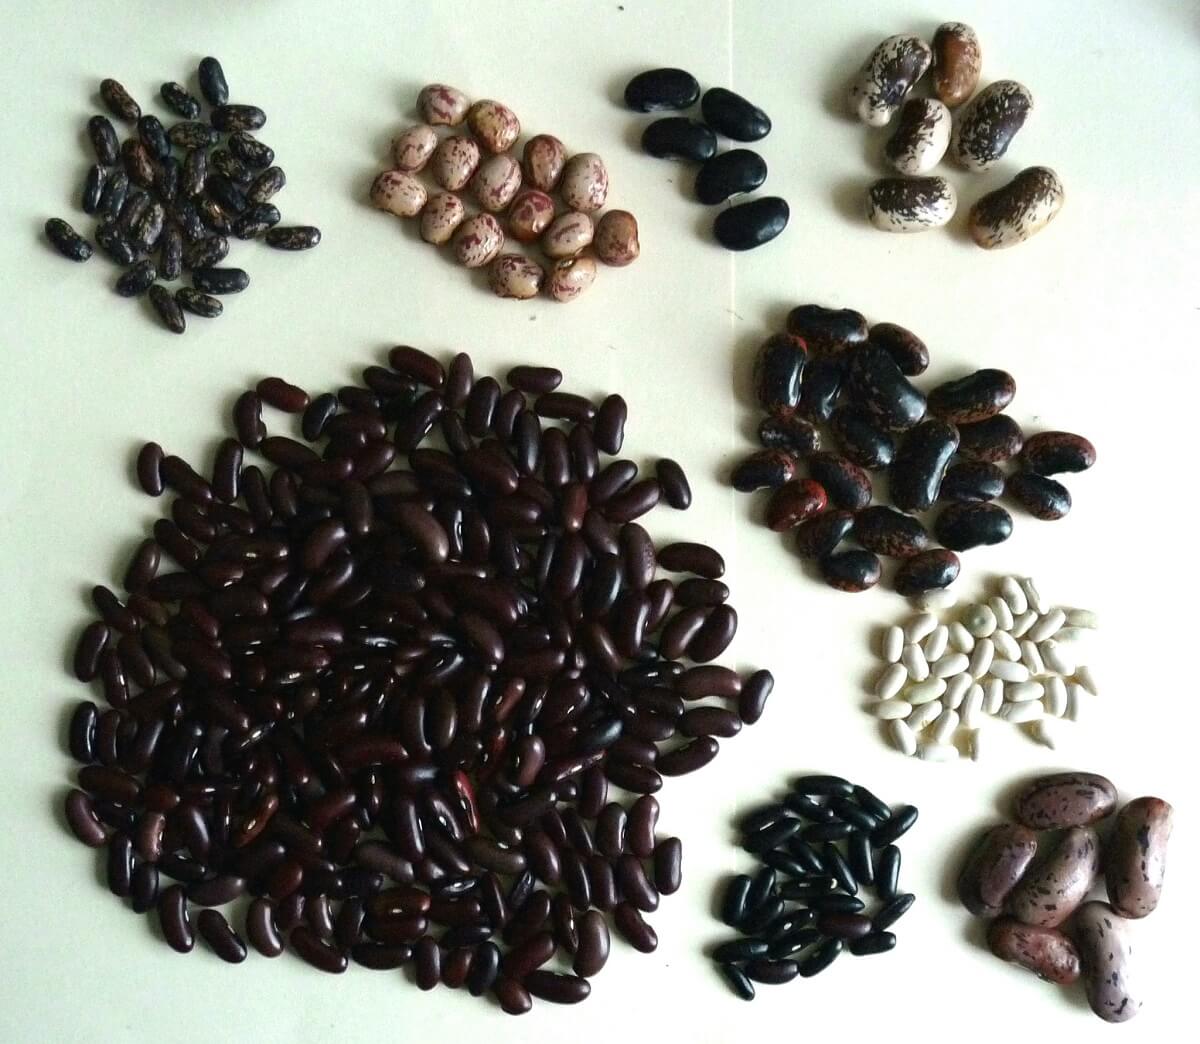 bean varieties